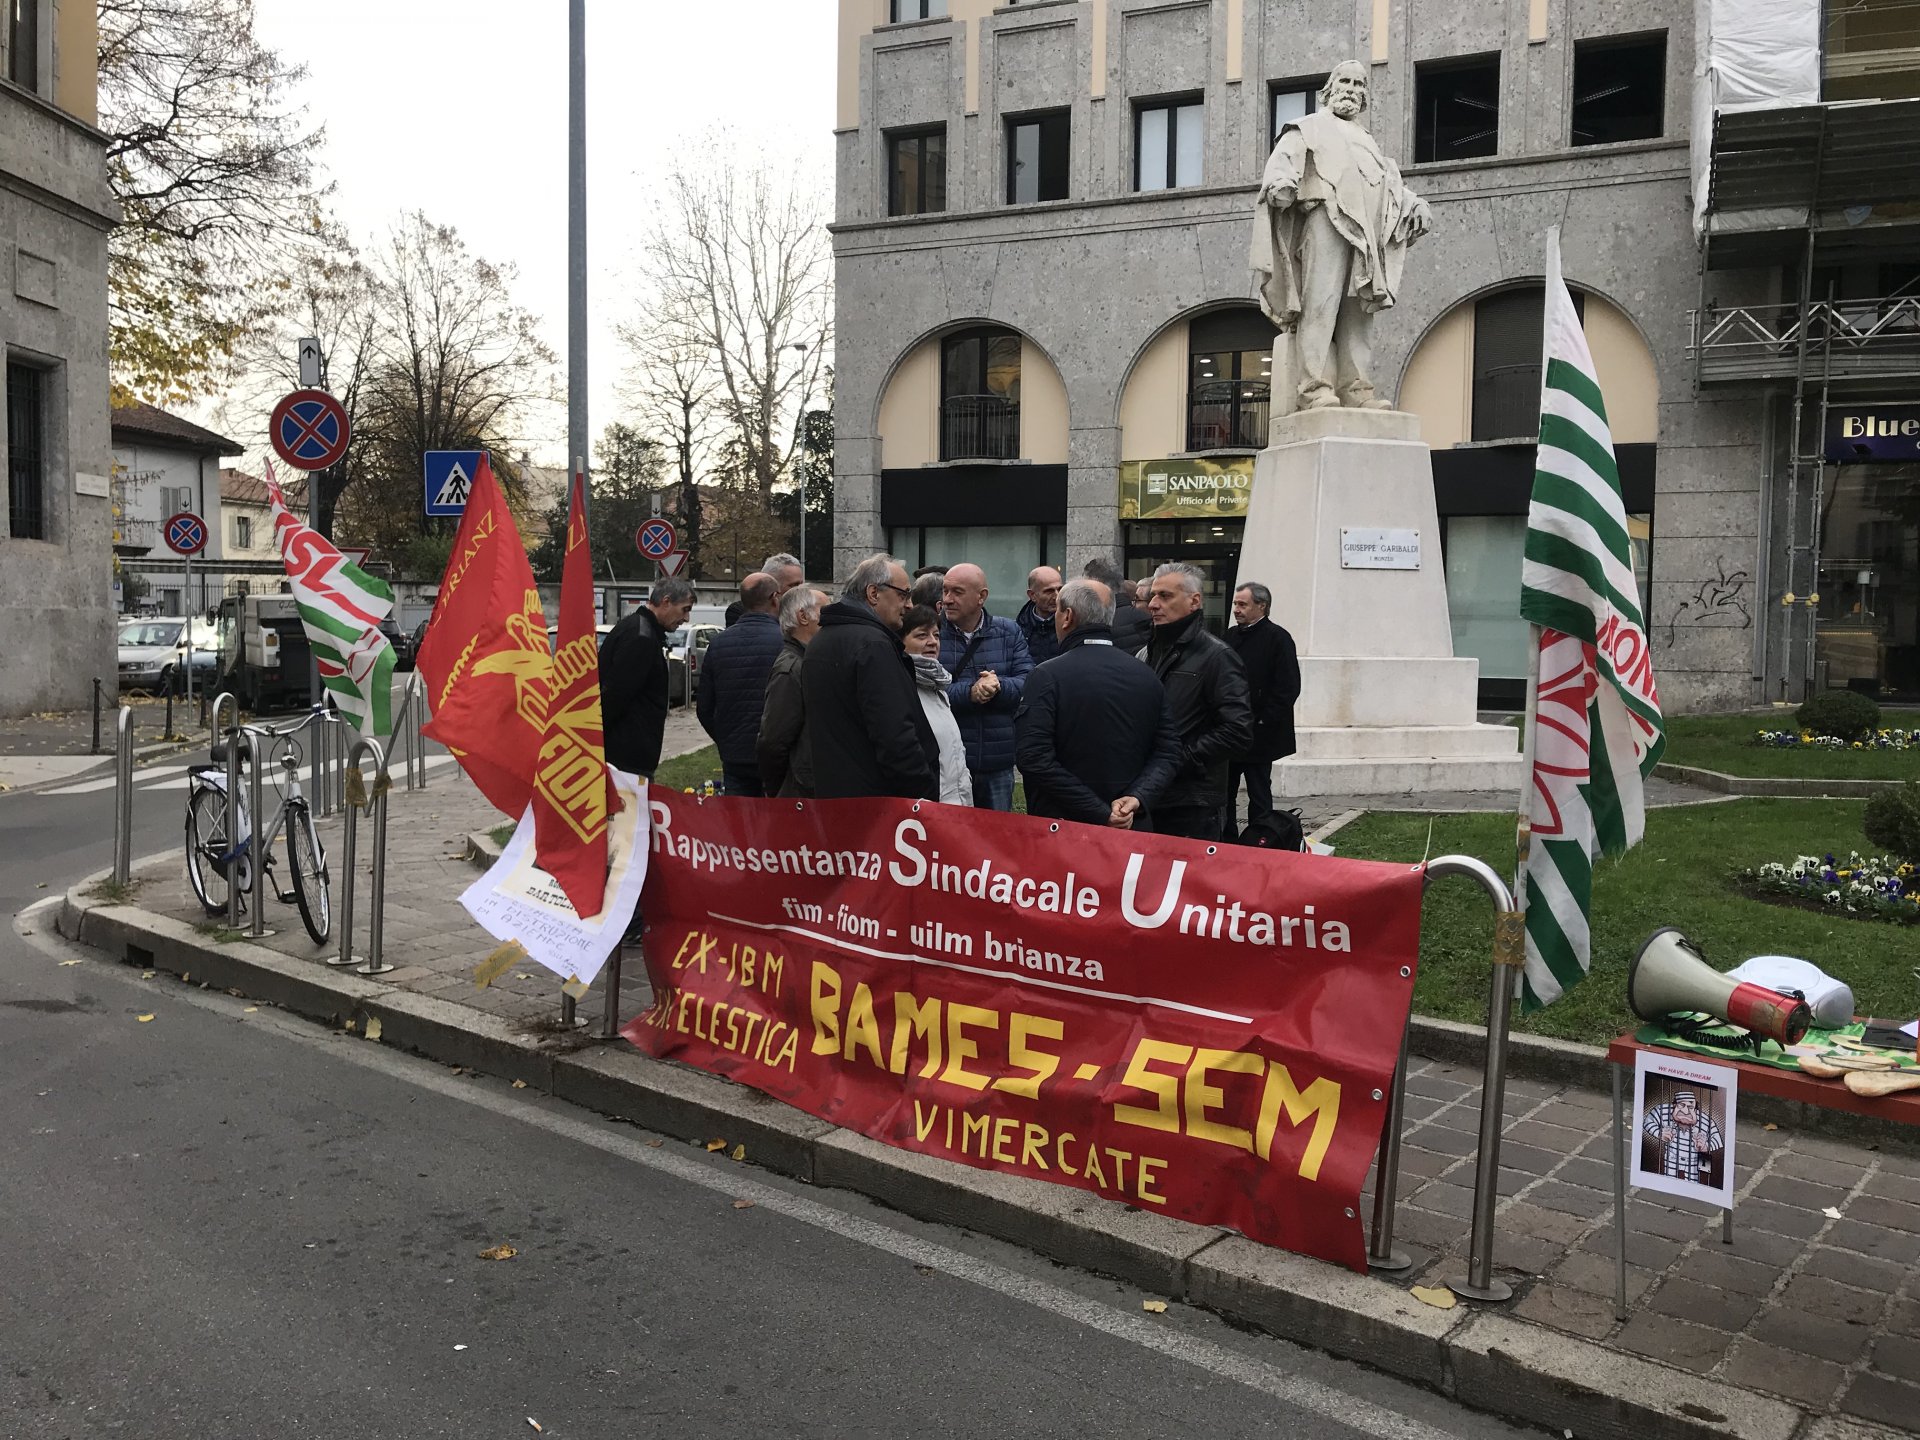 Vimercate ex lavoratori Bames e Sem presidio davanti a Tribunale di Monza per attesa rinvio a giudizio proprietari e dirigenti per bancarotta